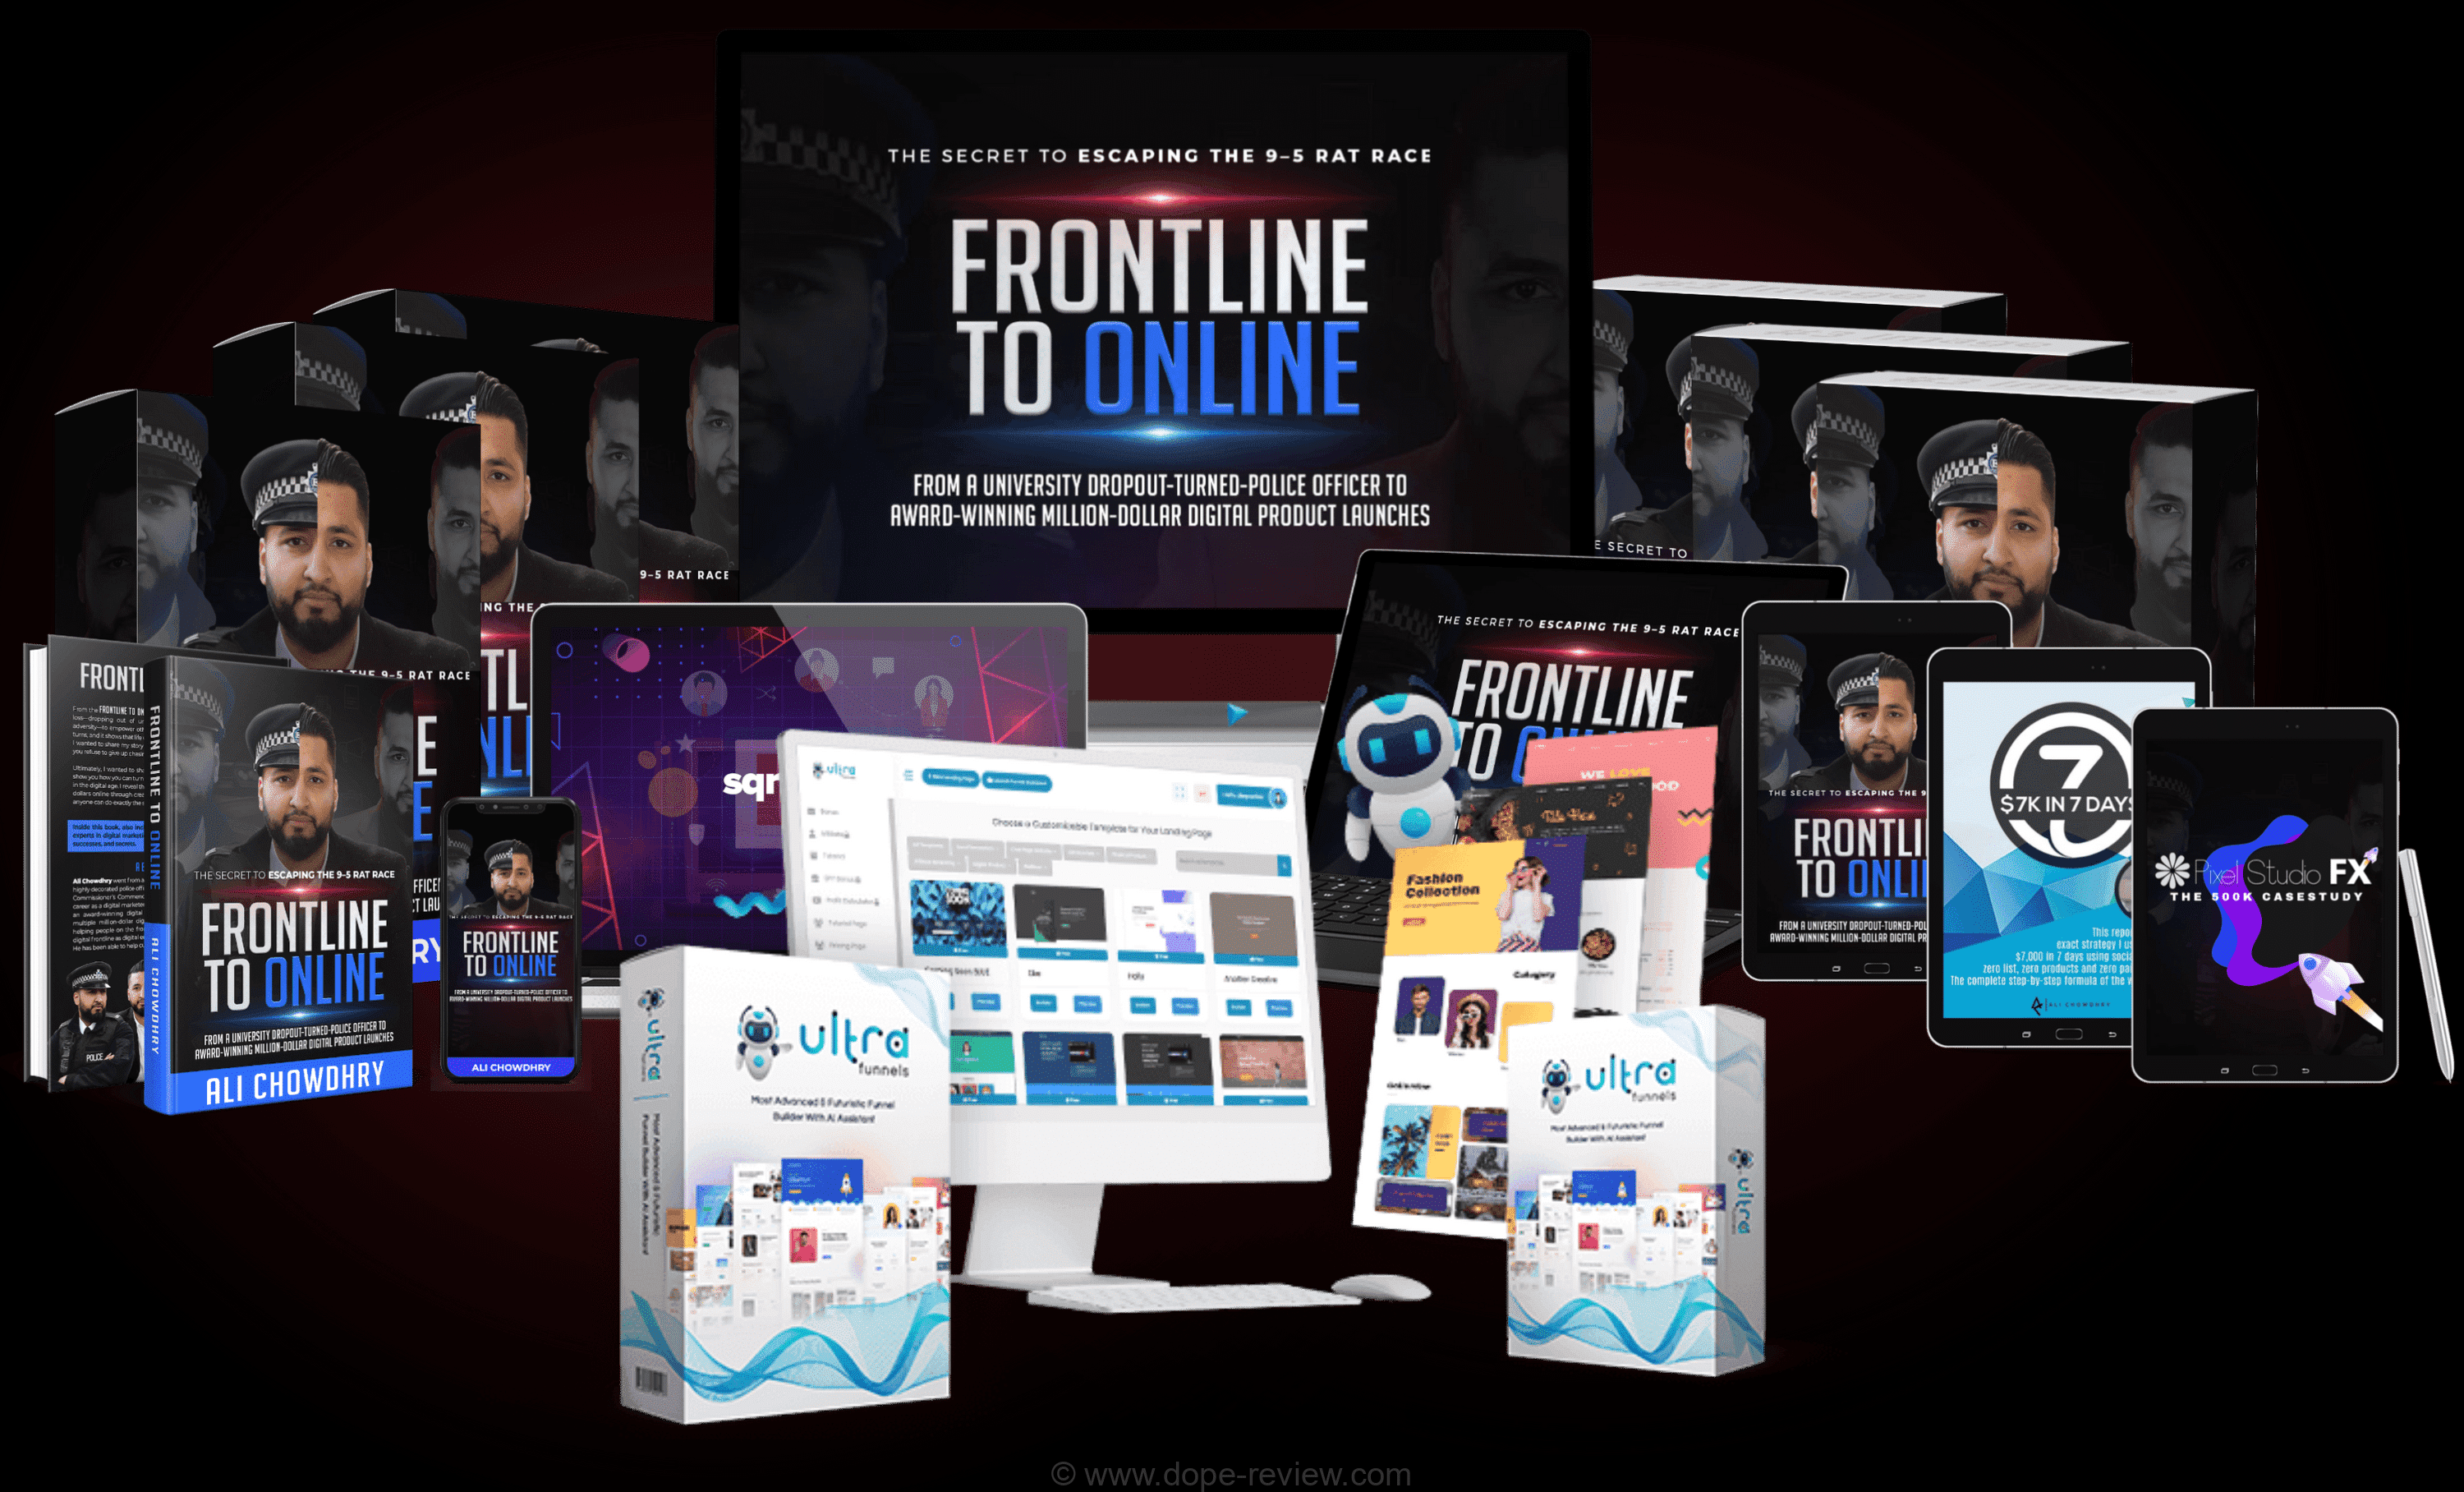 Frontline to online